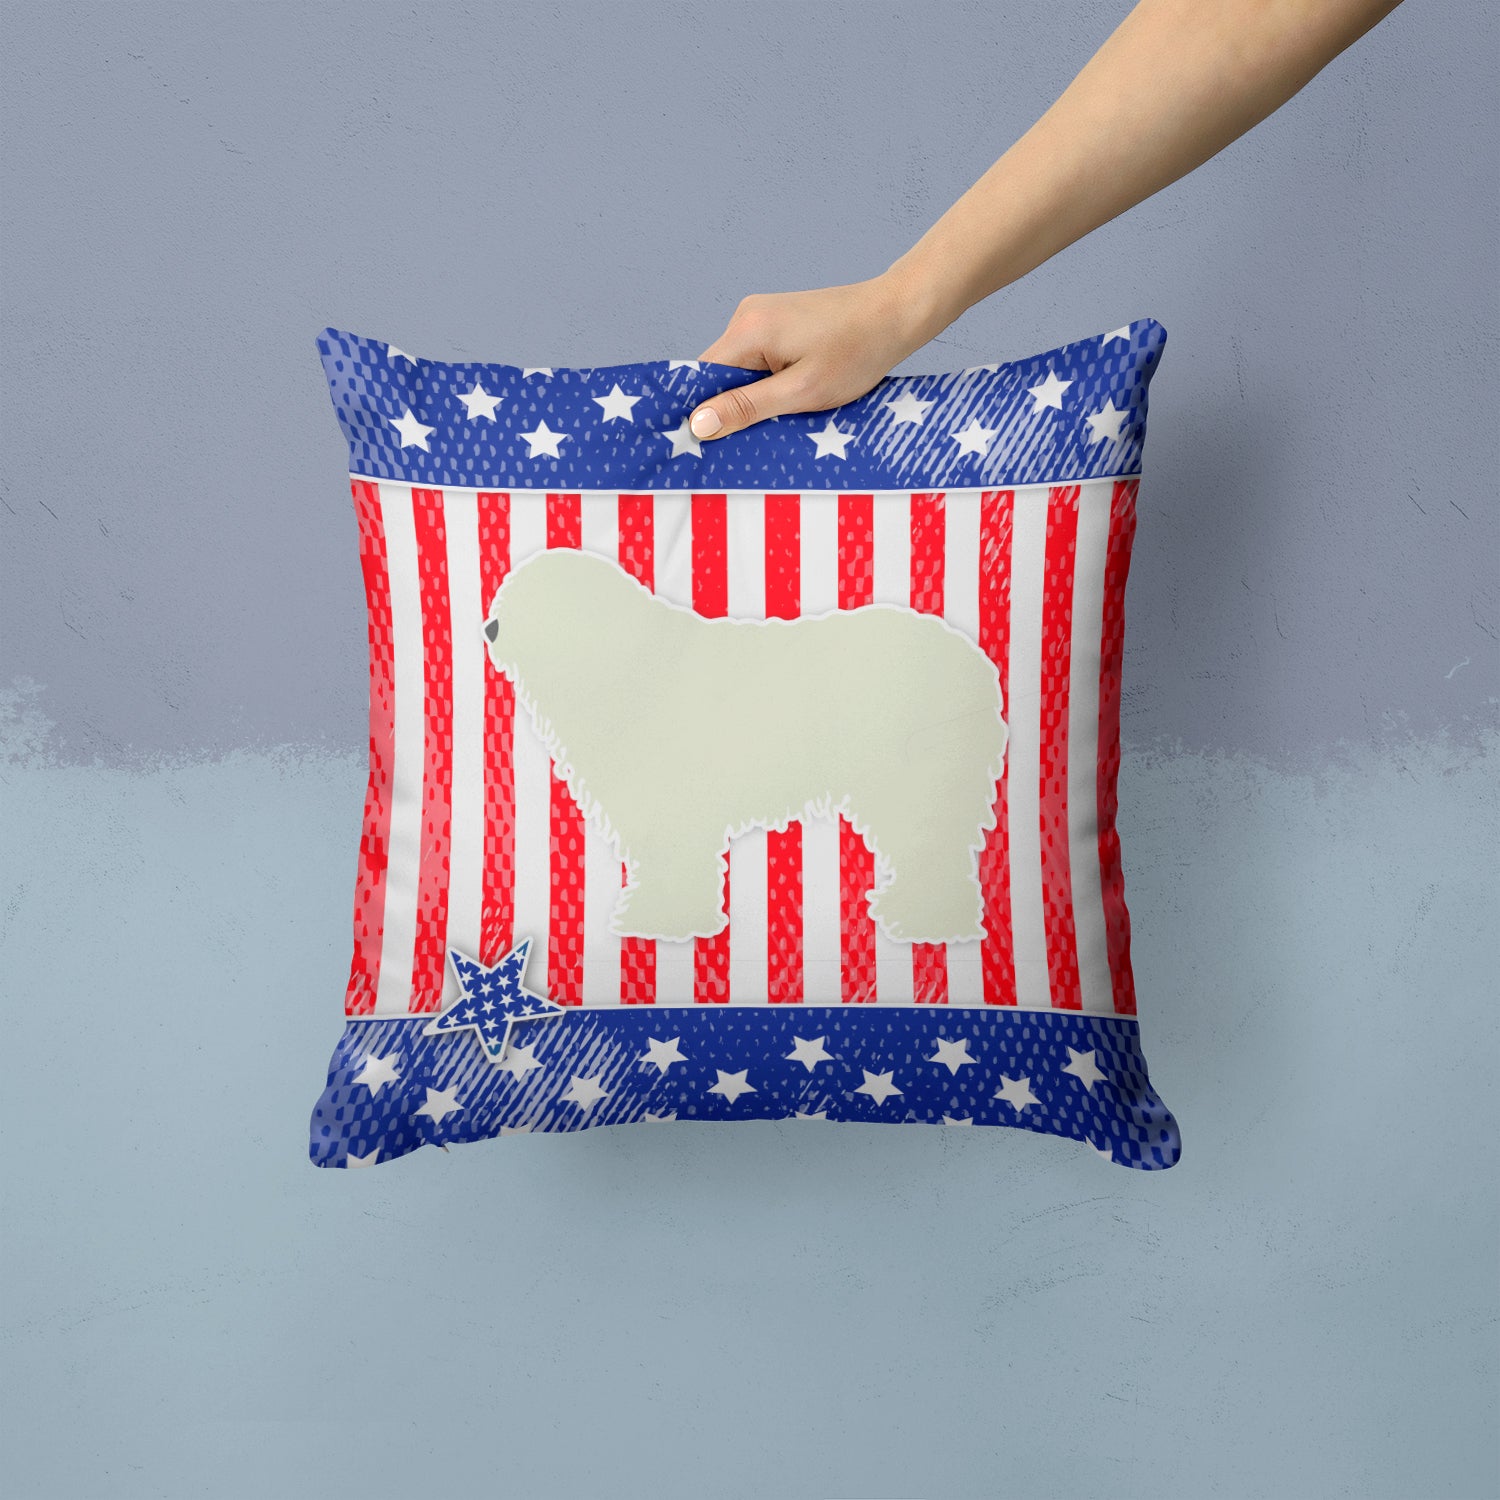 USA Patriotic Komondor Fabric Decorative Pillow BB3355PW1414 - the-store.com